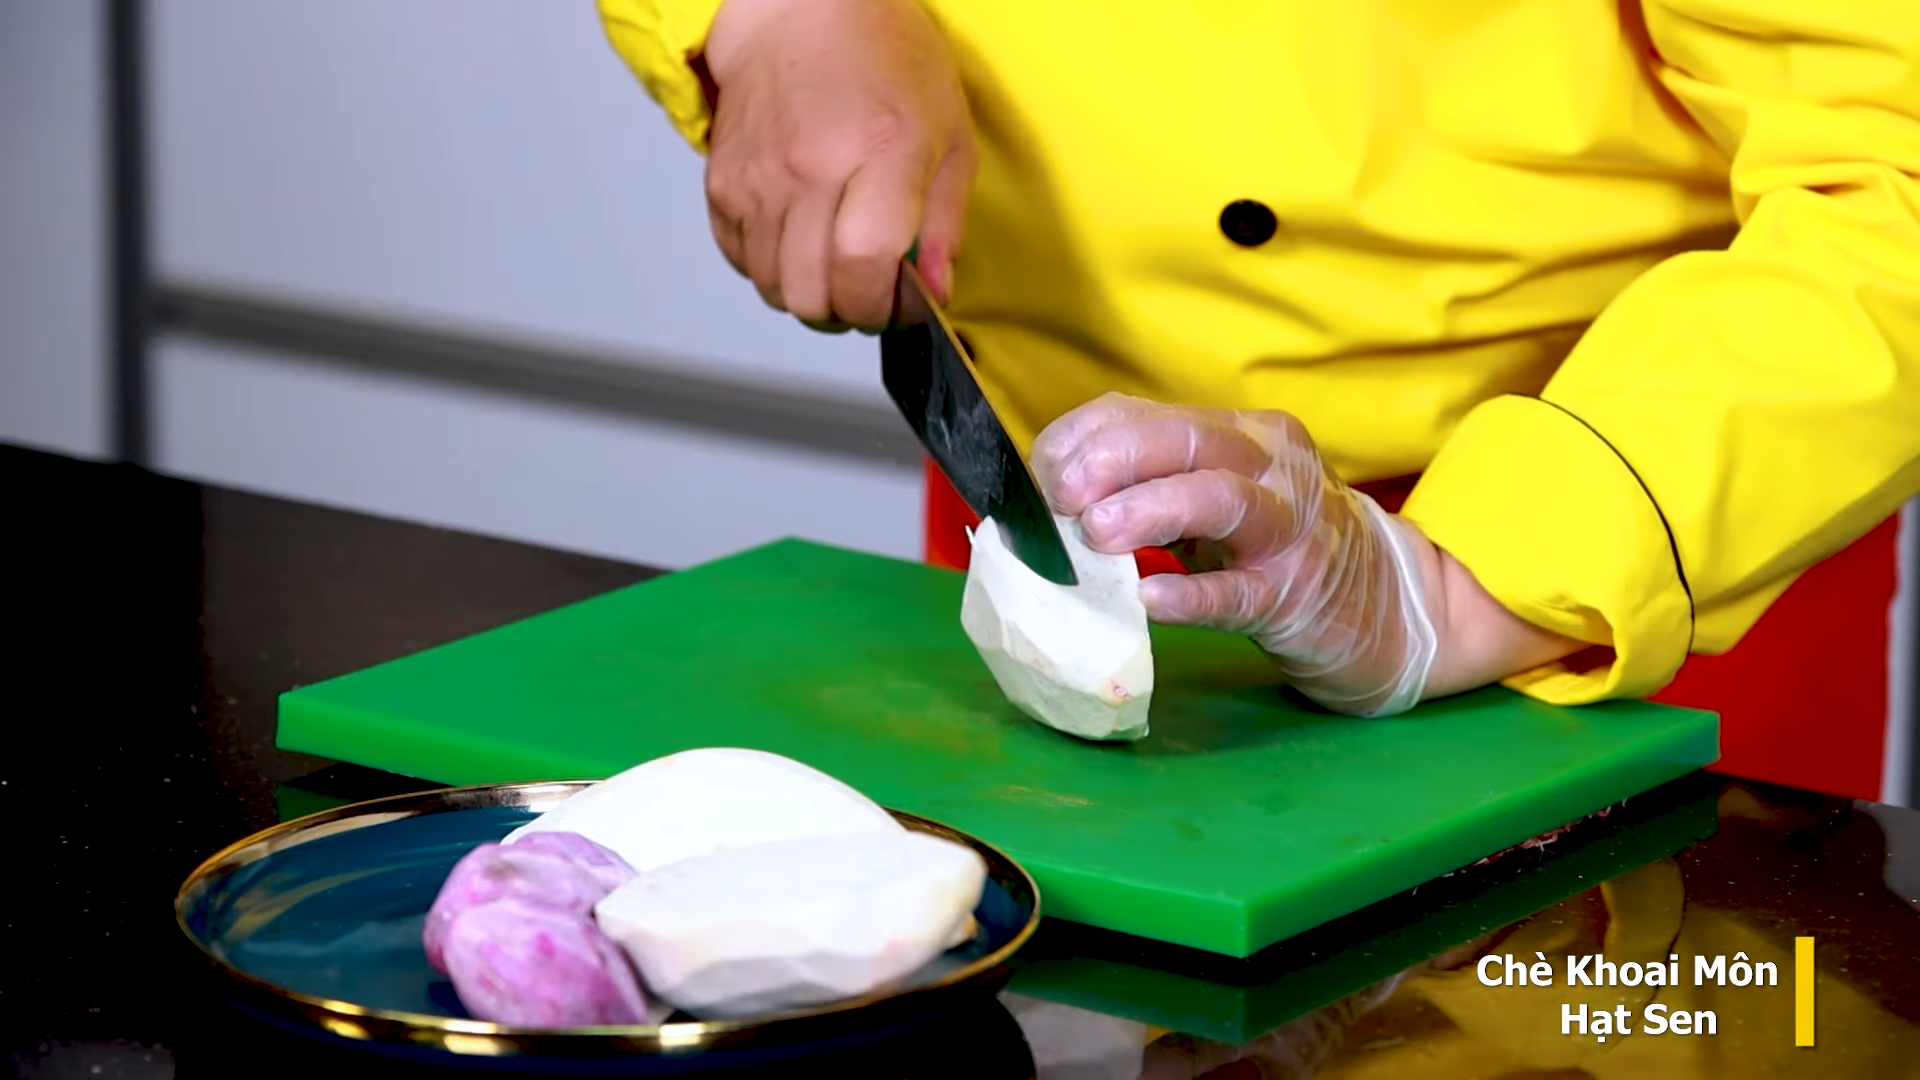 Cách nấu Chè Khoai Môn Hạt Sen theo kiểu Người Hoa thơm ngon, đơn giản